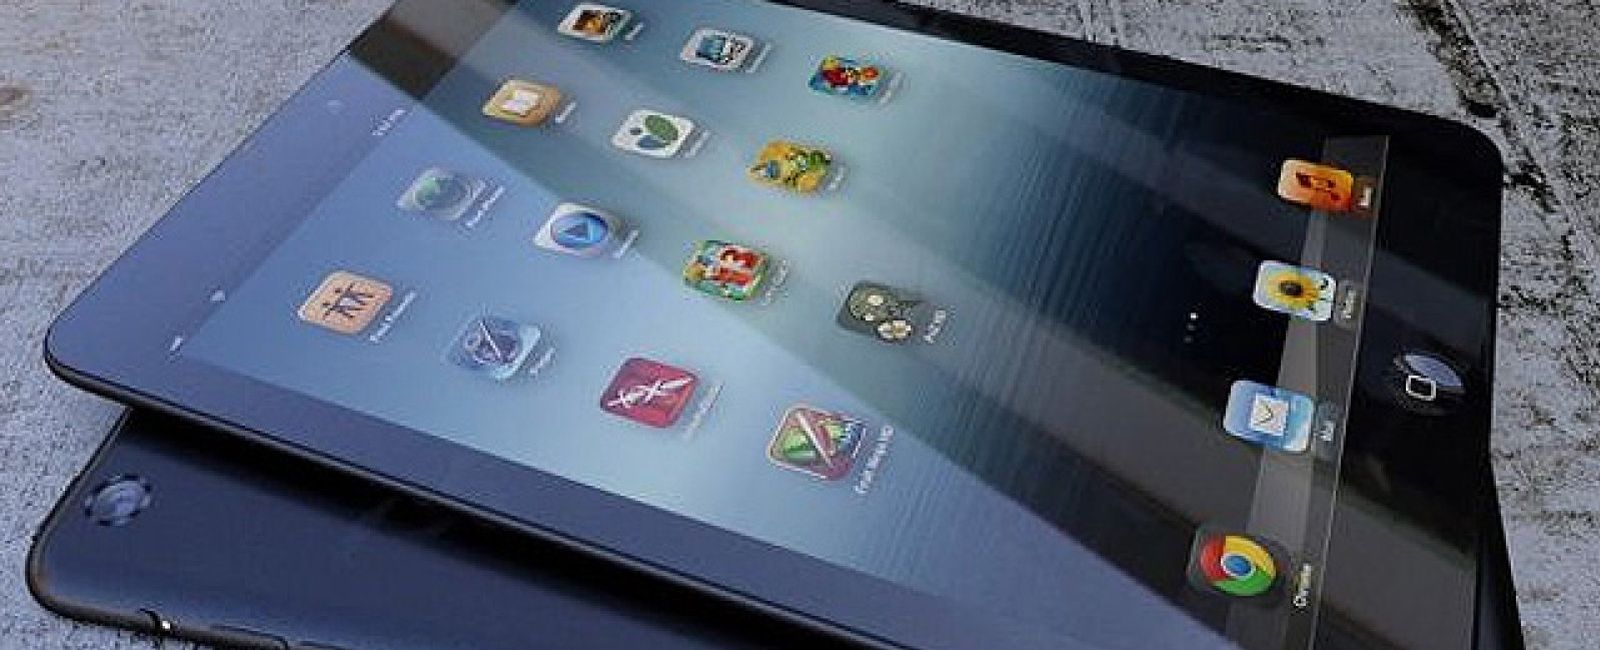 Foto: Cinco usos sorprendentes del iPad